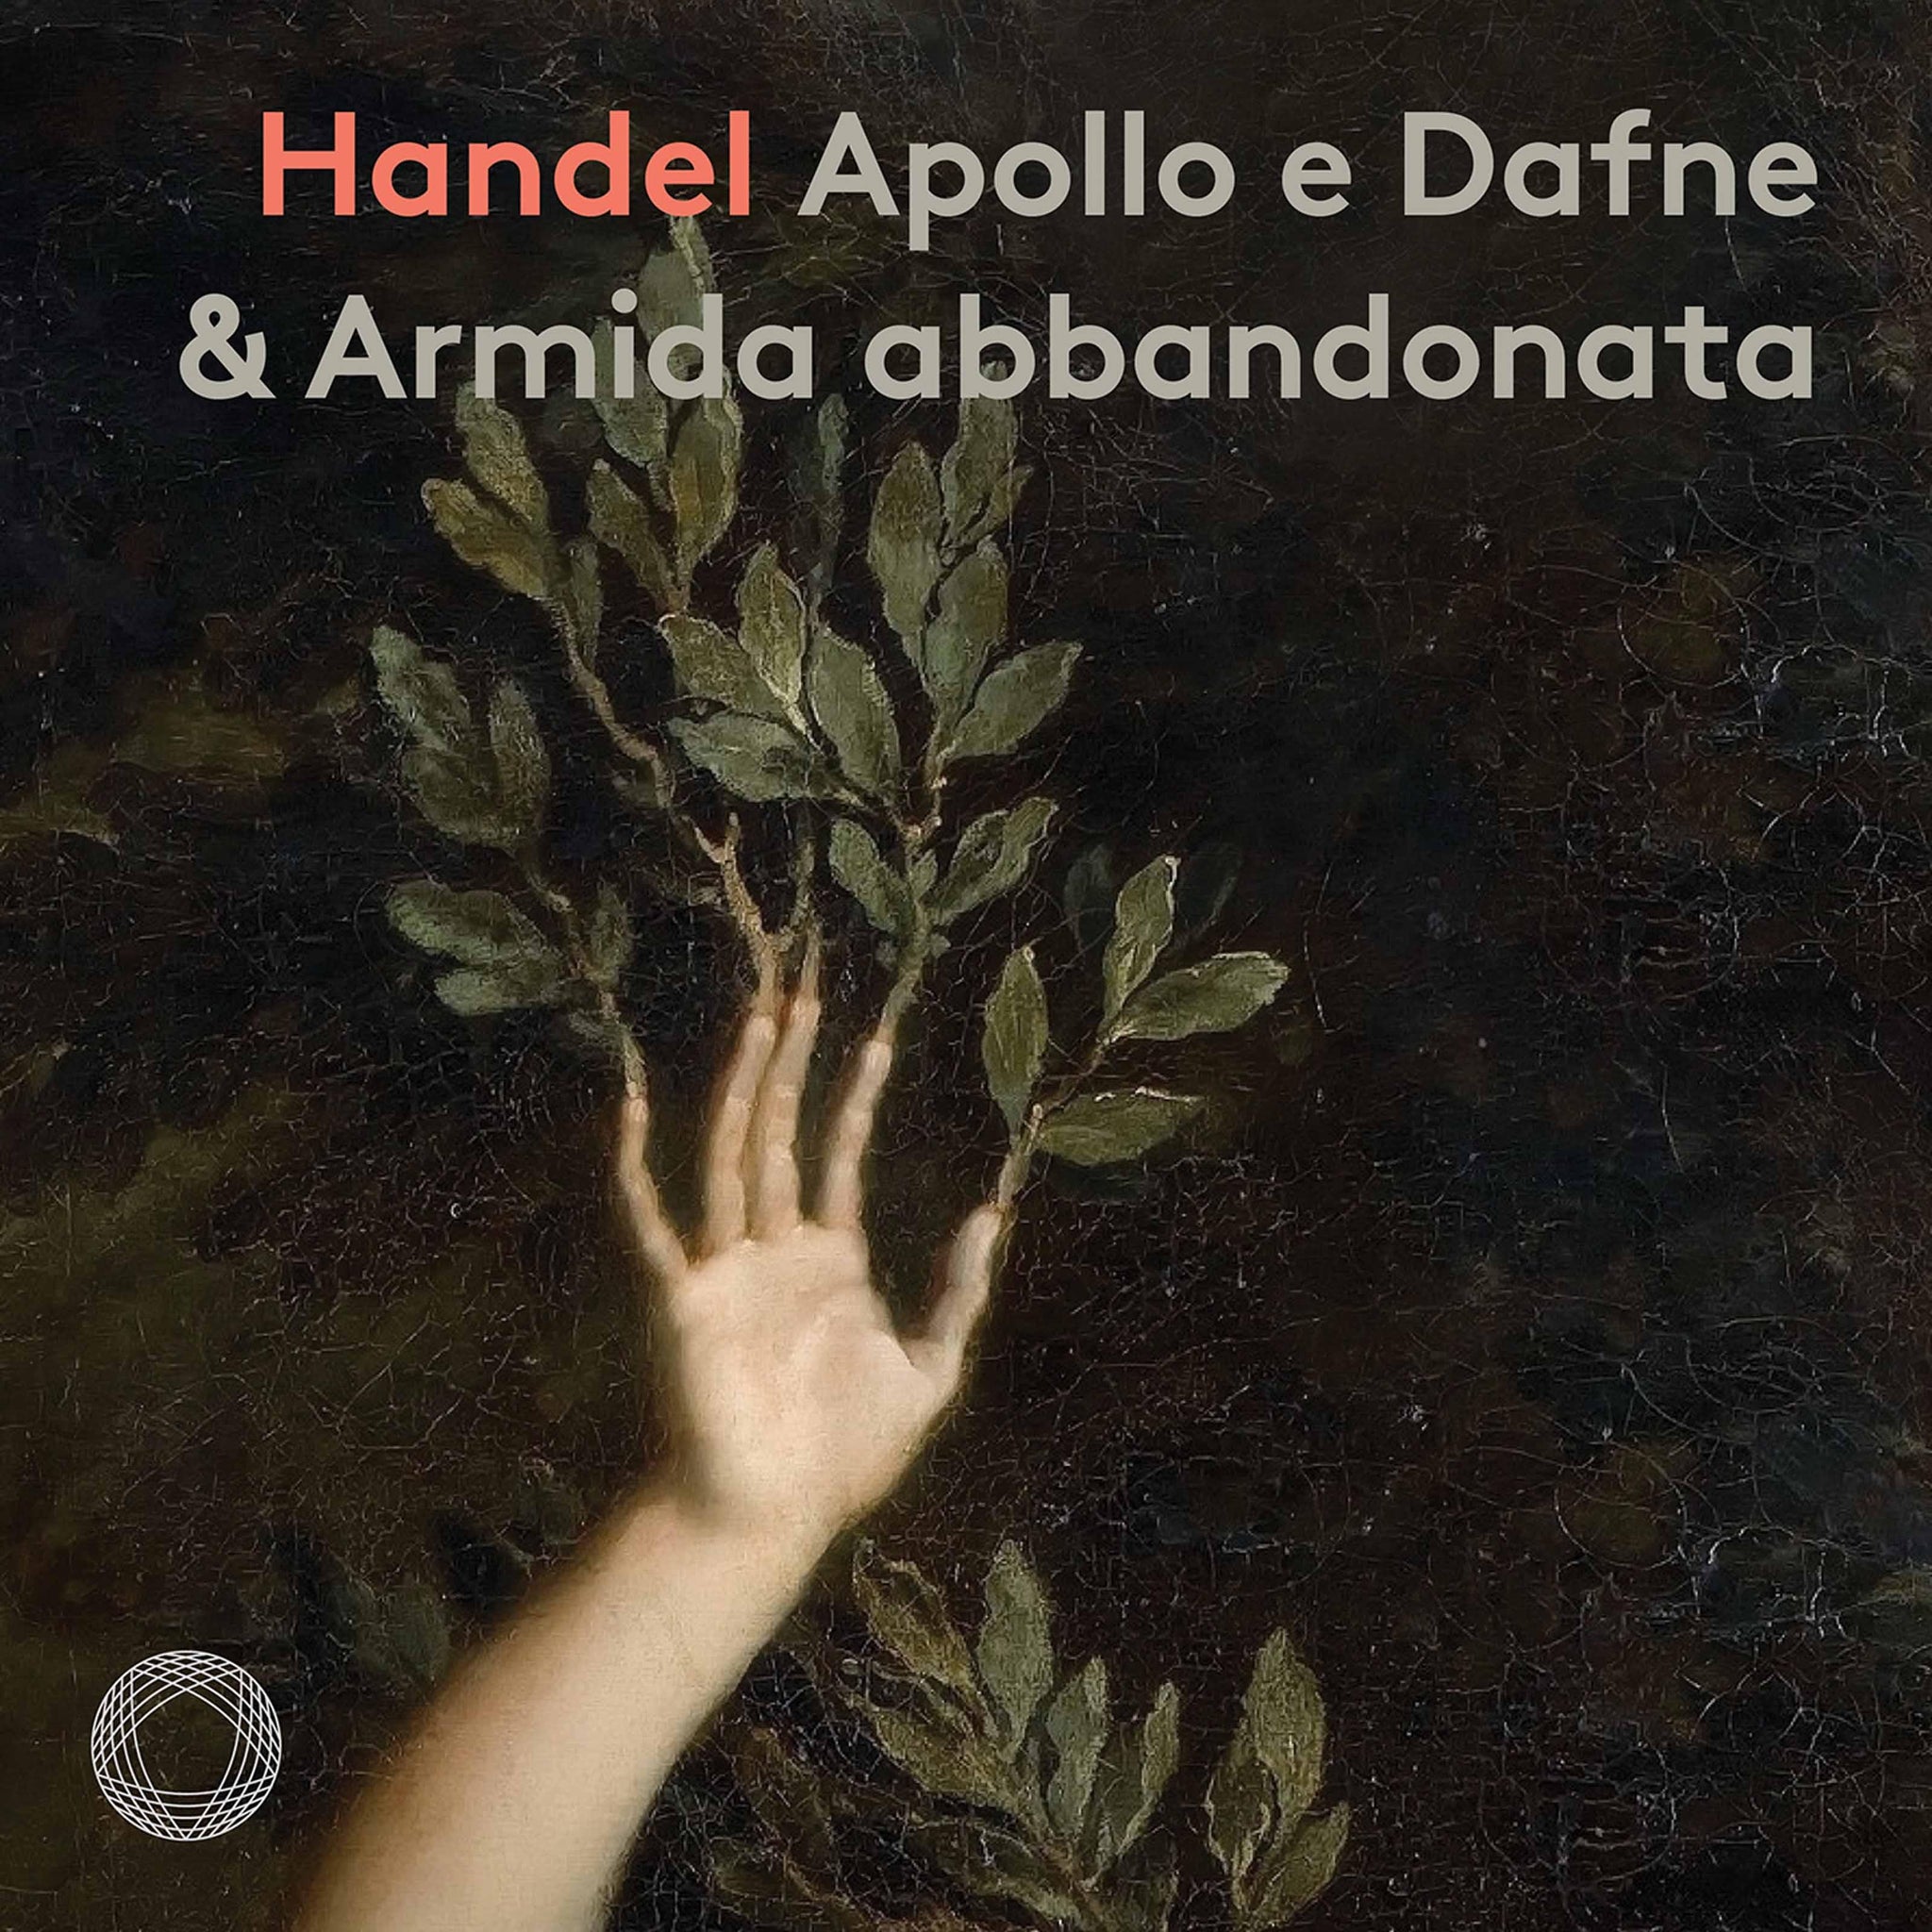 Handel: Apollo e Dafne - Armida abbandonata / Chest, Lewek, Corti, Il pomo d’oro - ArkivMusic